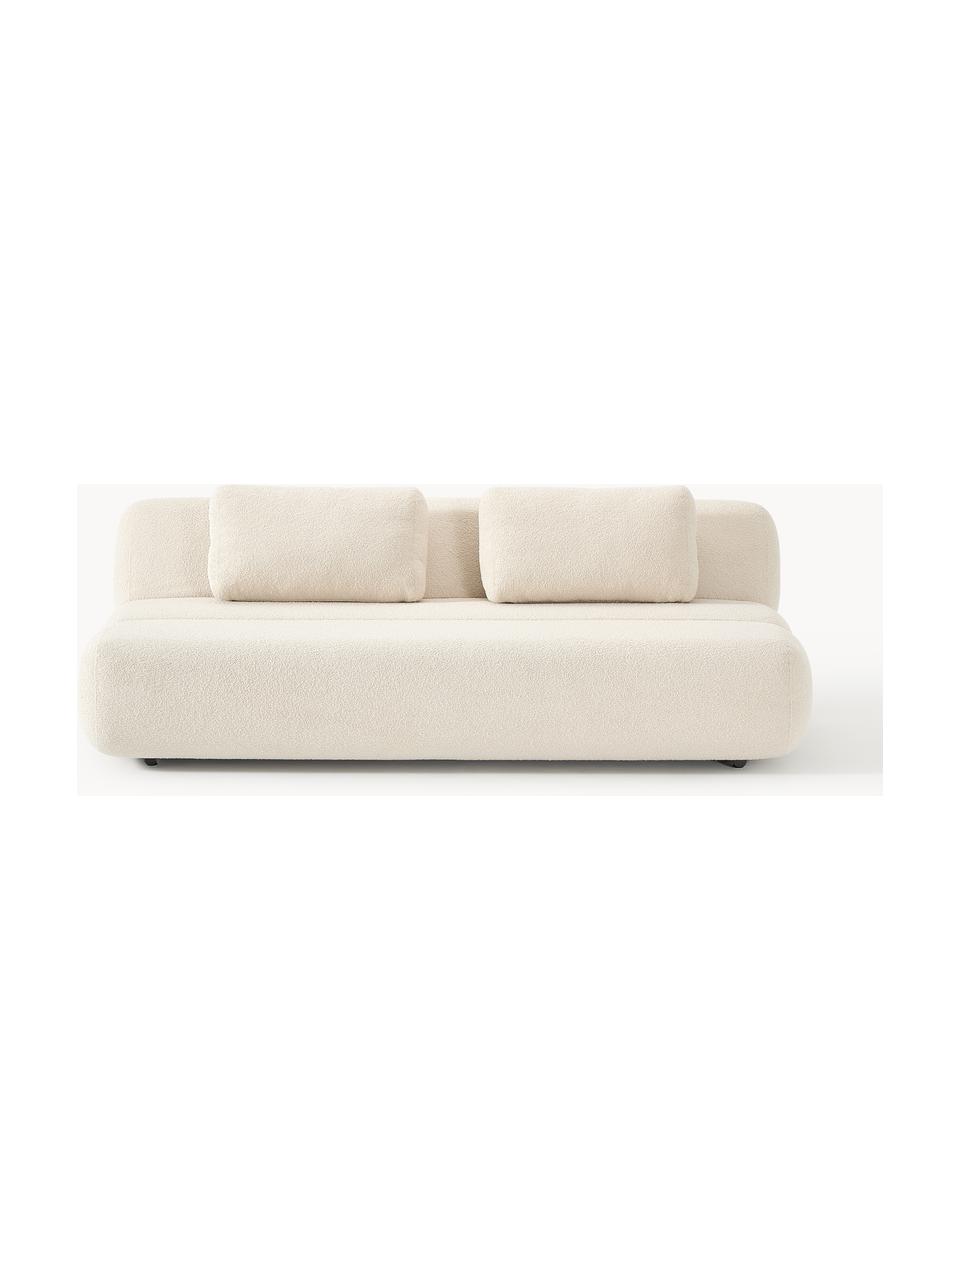 Sofa rozkładana Teddy Caterpillar (3-osobowa), Tapicerka: Teddy (100% poliester) Dz, Stelaż: drewno świerkowe, sklejka, Jasnobeżowy Teddy, S 203 x W 128 cm